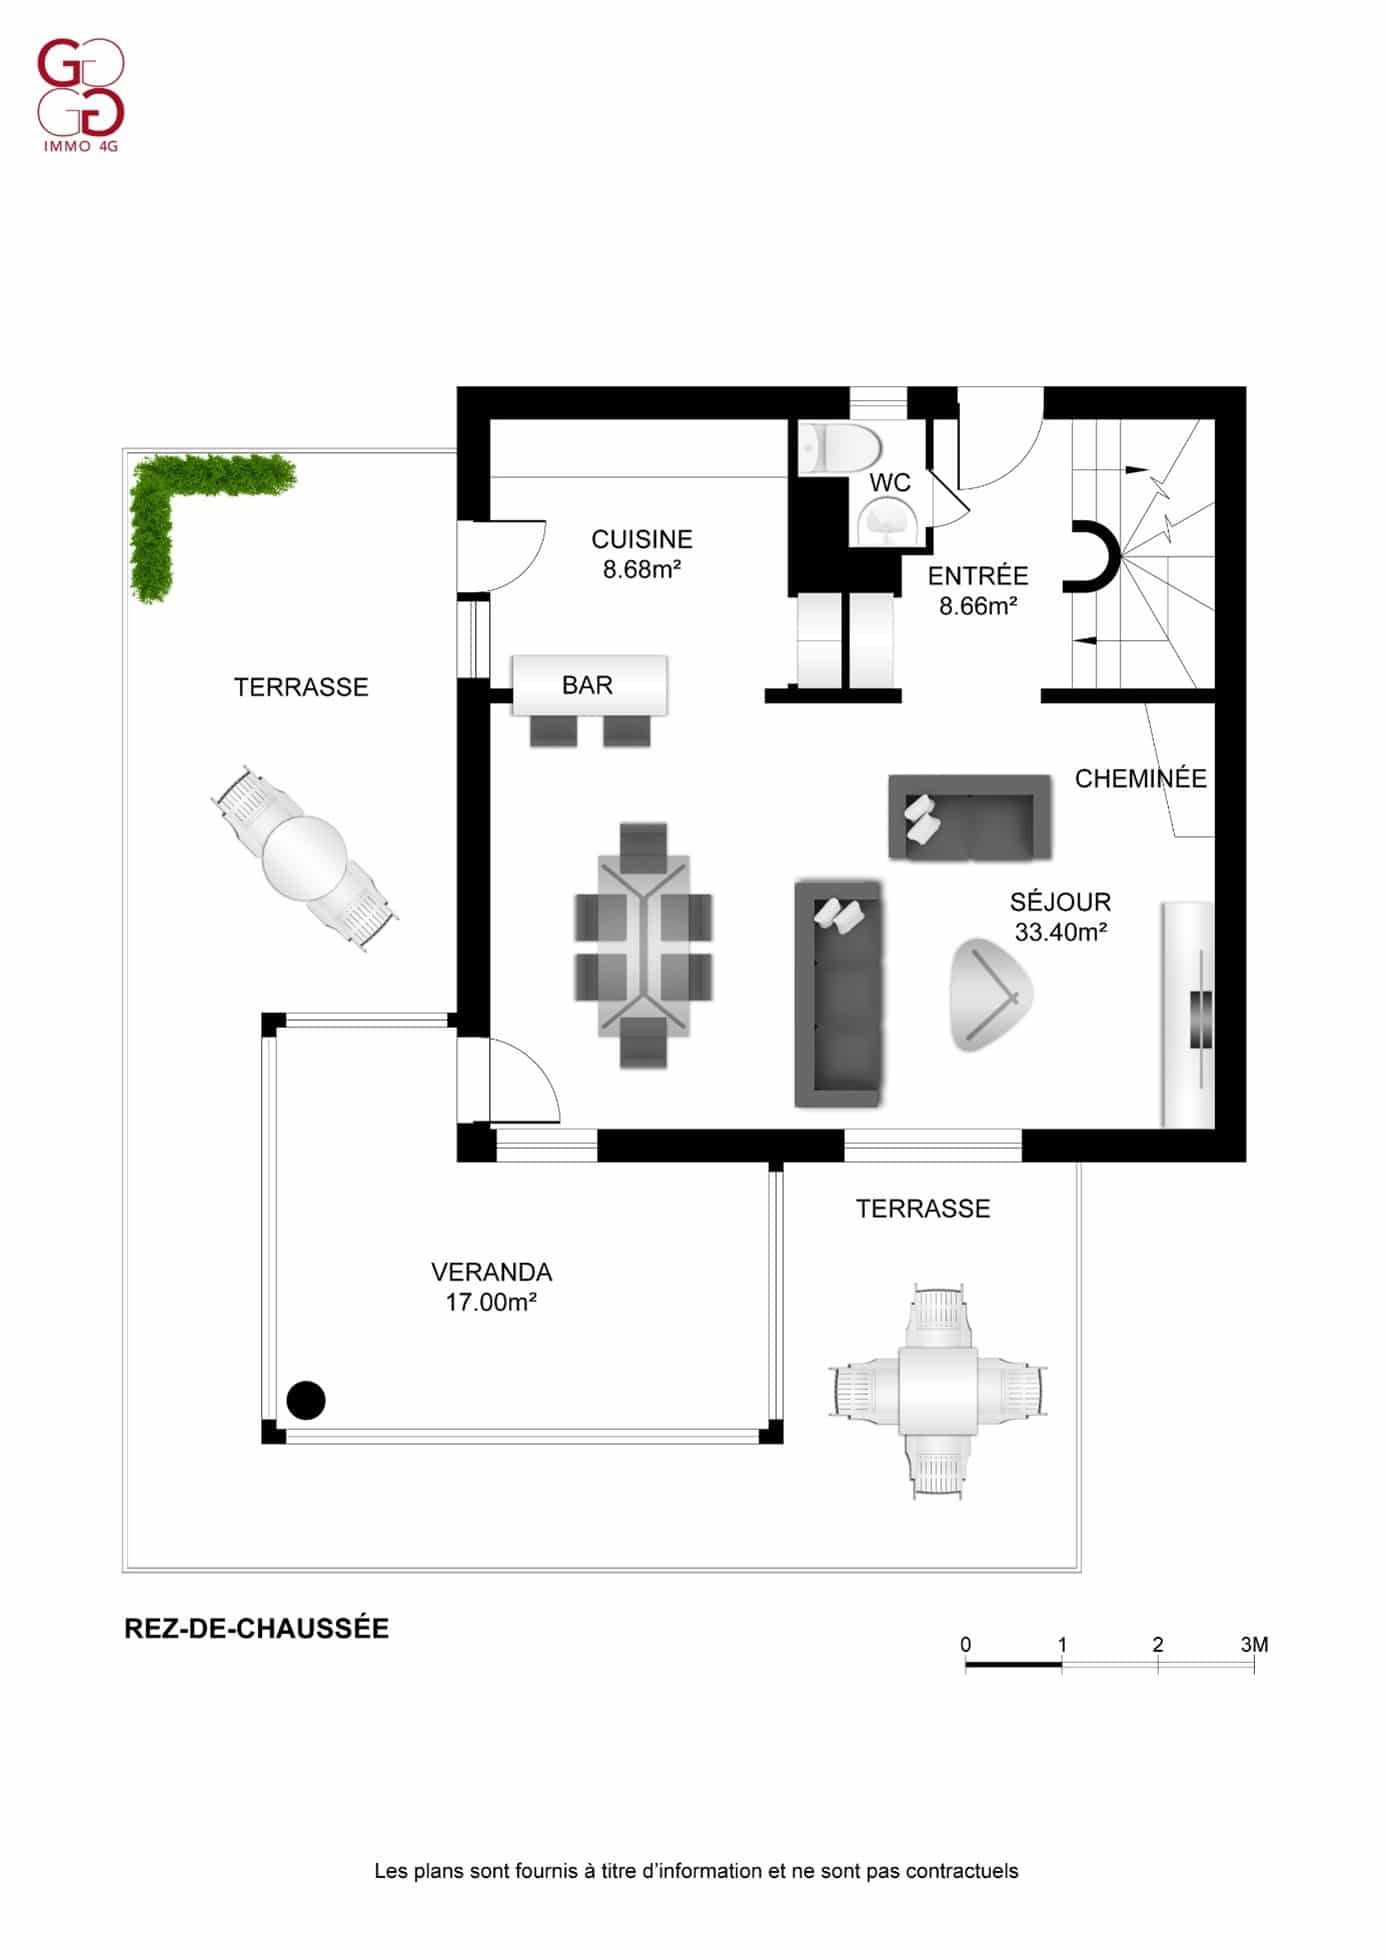 Un plan d'étage pour un petit appartement.